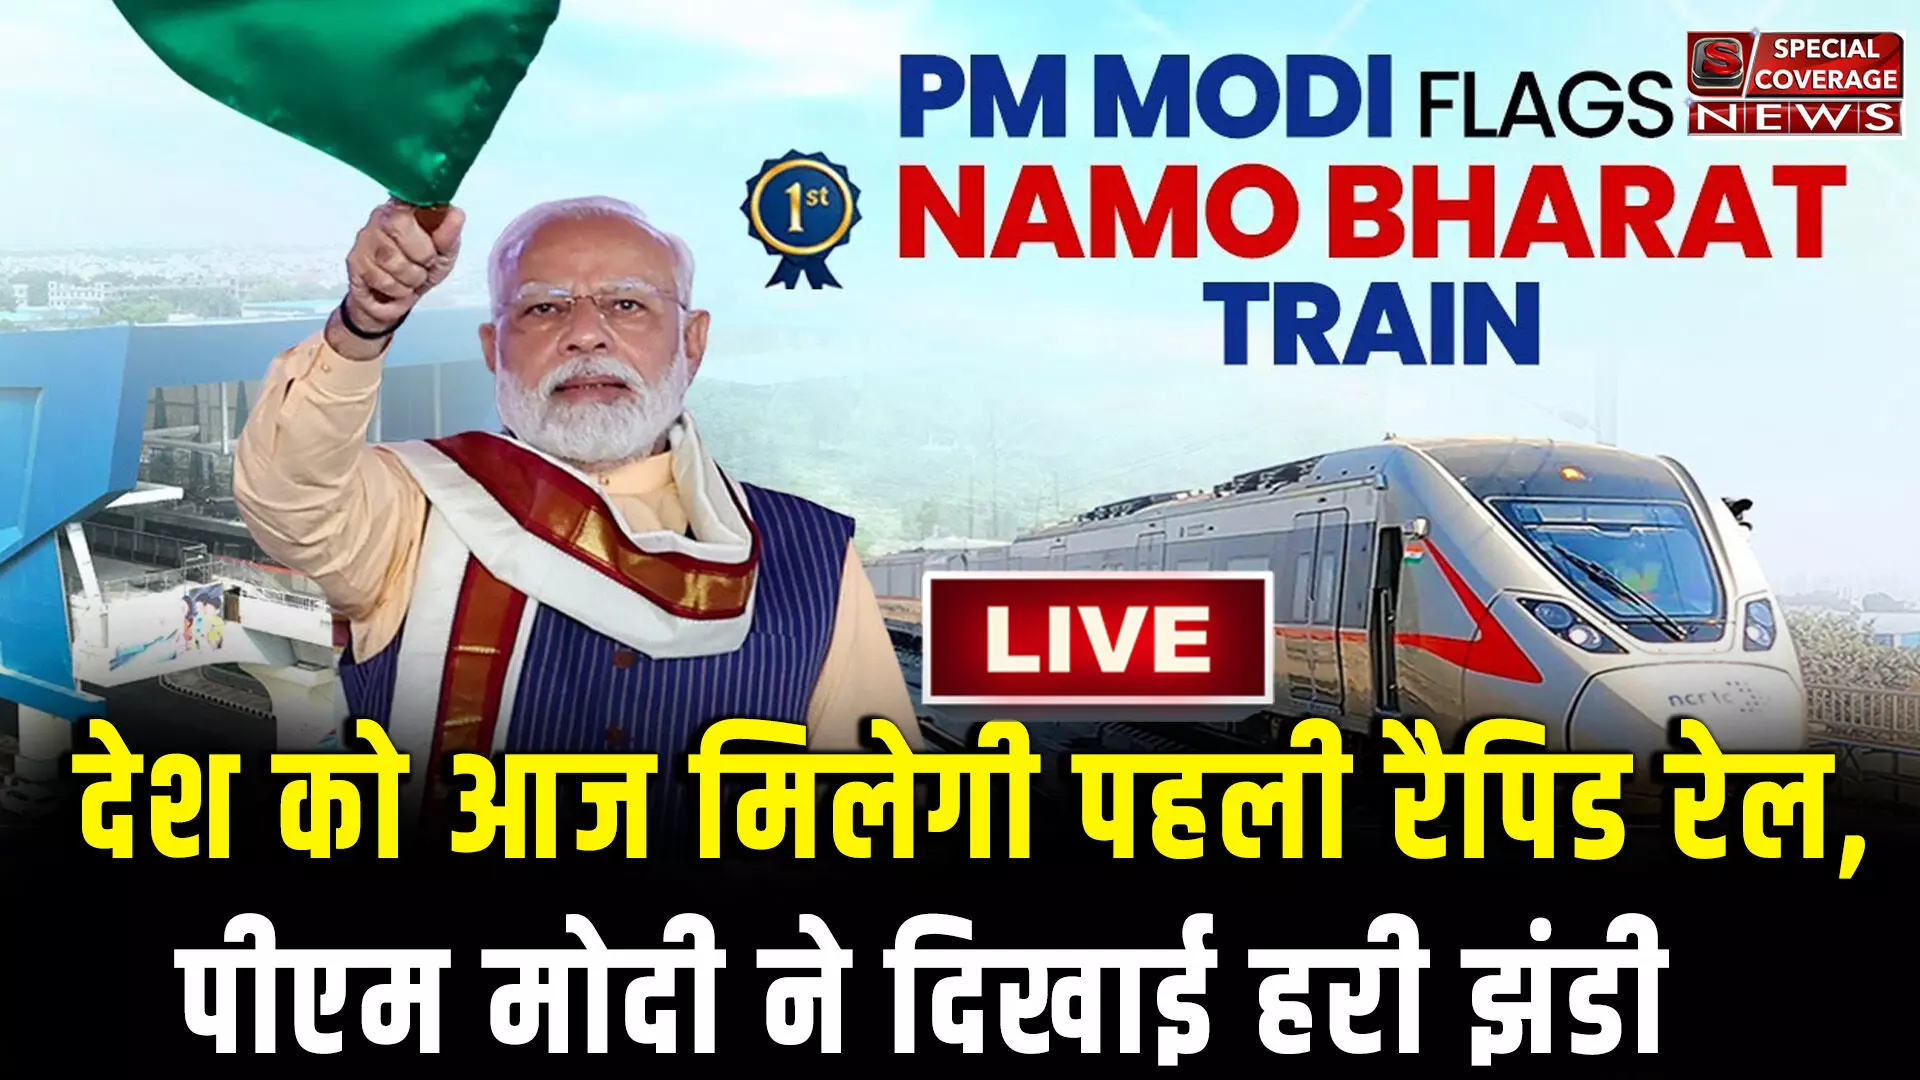 PM मोदी ने देश को दी पहली रैपिड रेल की सौगात, दिखाई हरी झंडी, 17 किलोमीटर की दूरी 12 मिनट में होगी पूरी! जानिए नमो भारत की खासियत